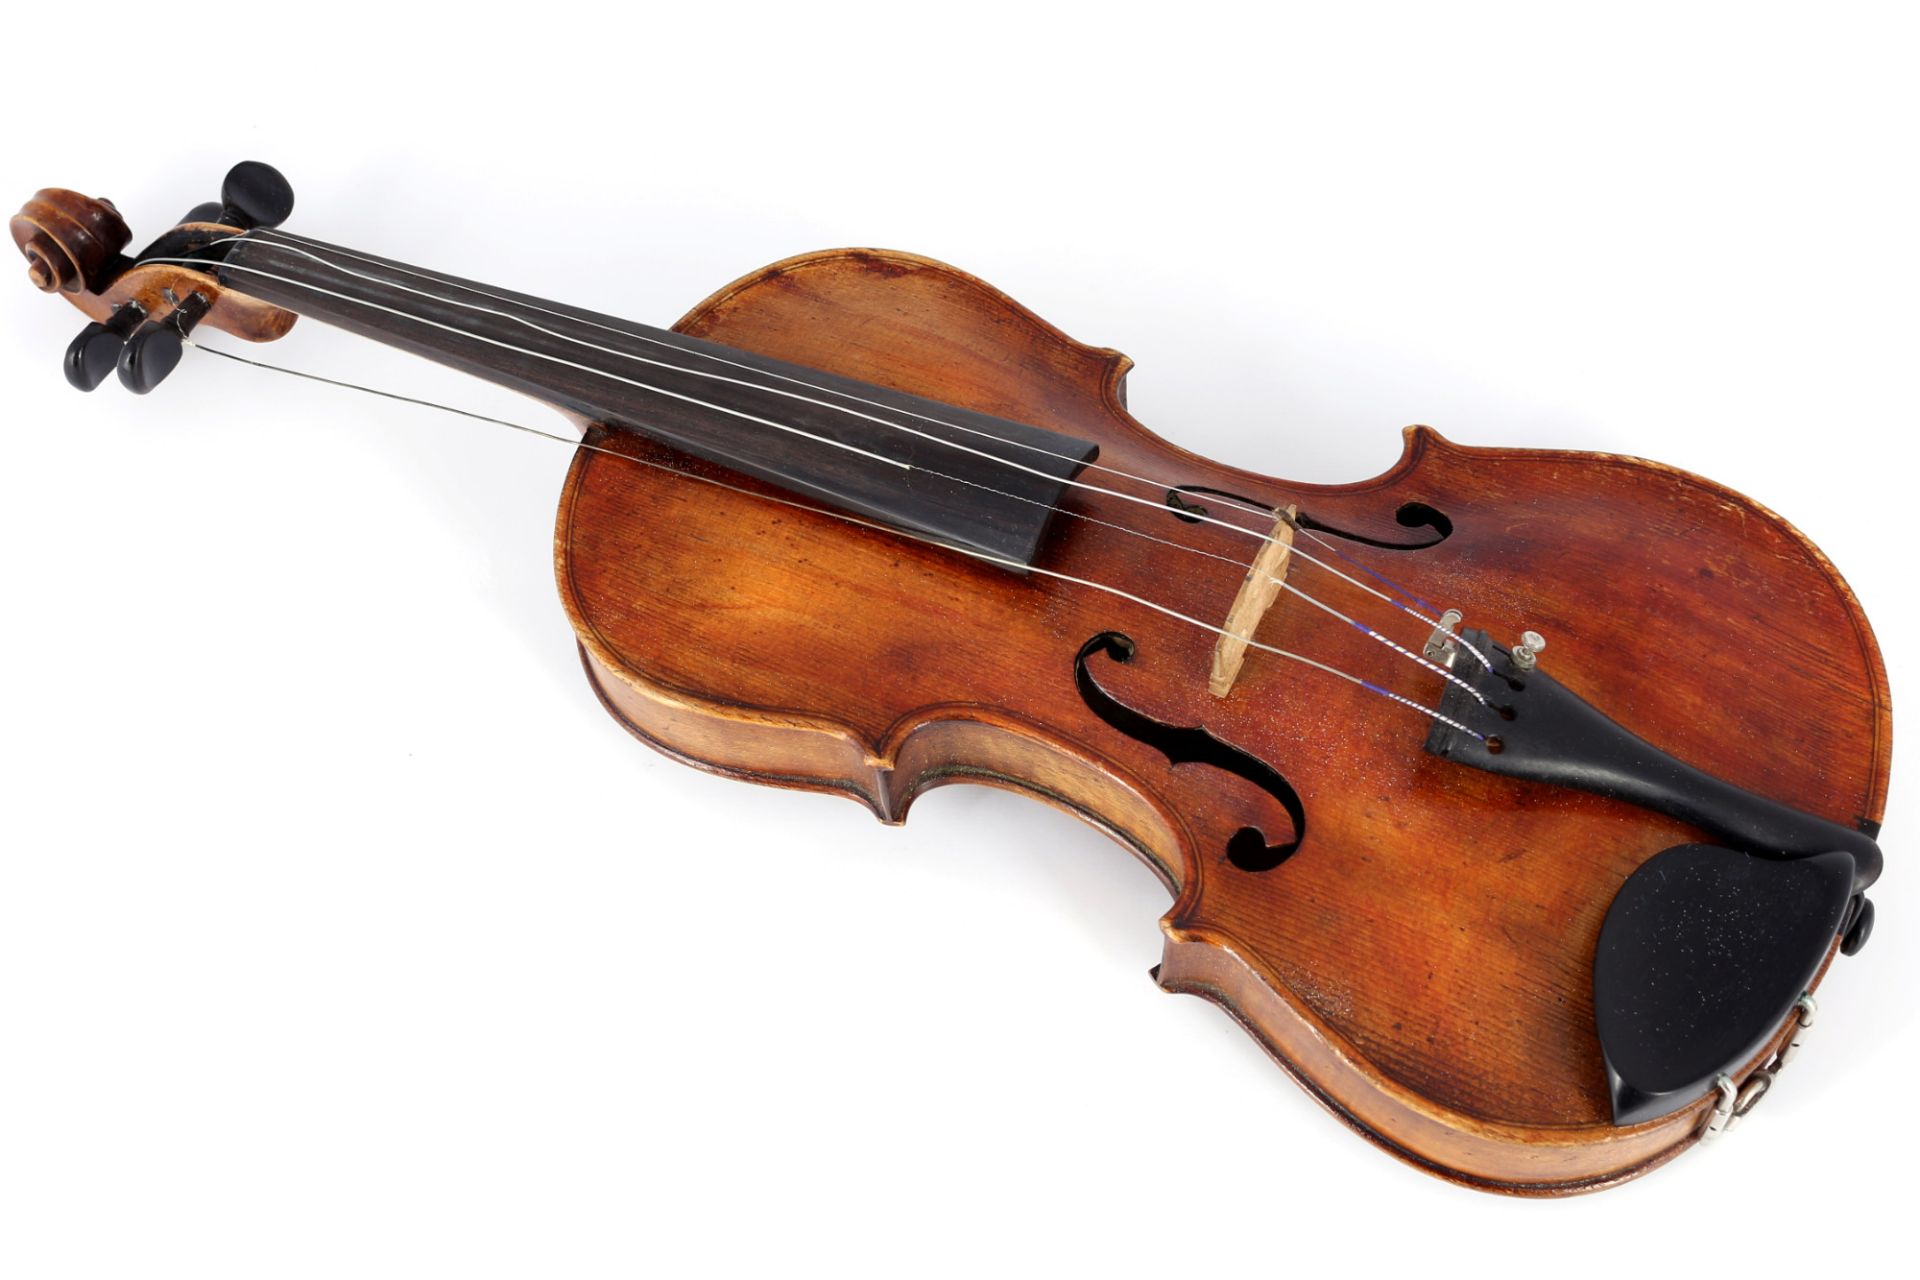 Violin 4/4 with case and 2 bows, Violine mit Koffer und 2 Bögen, - Image 2 of 6